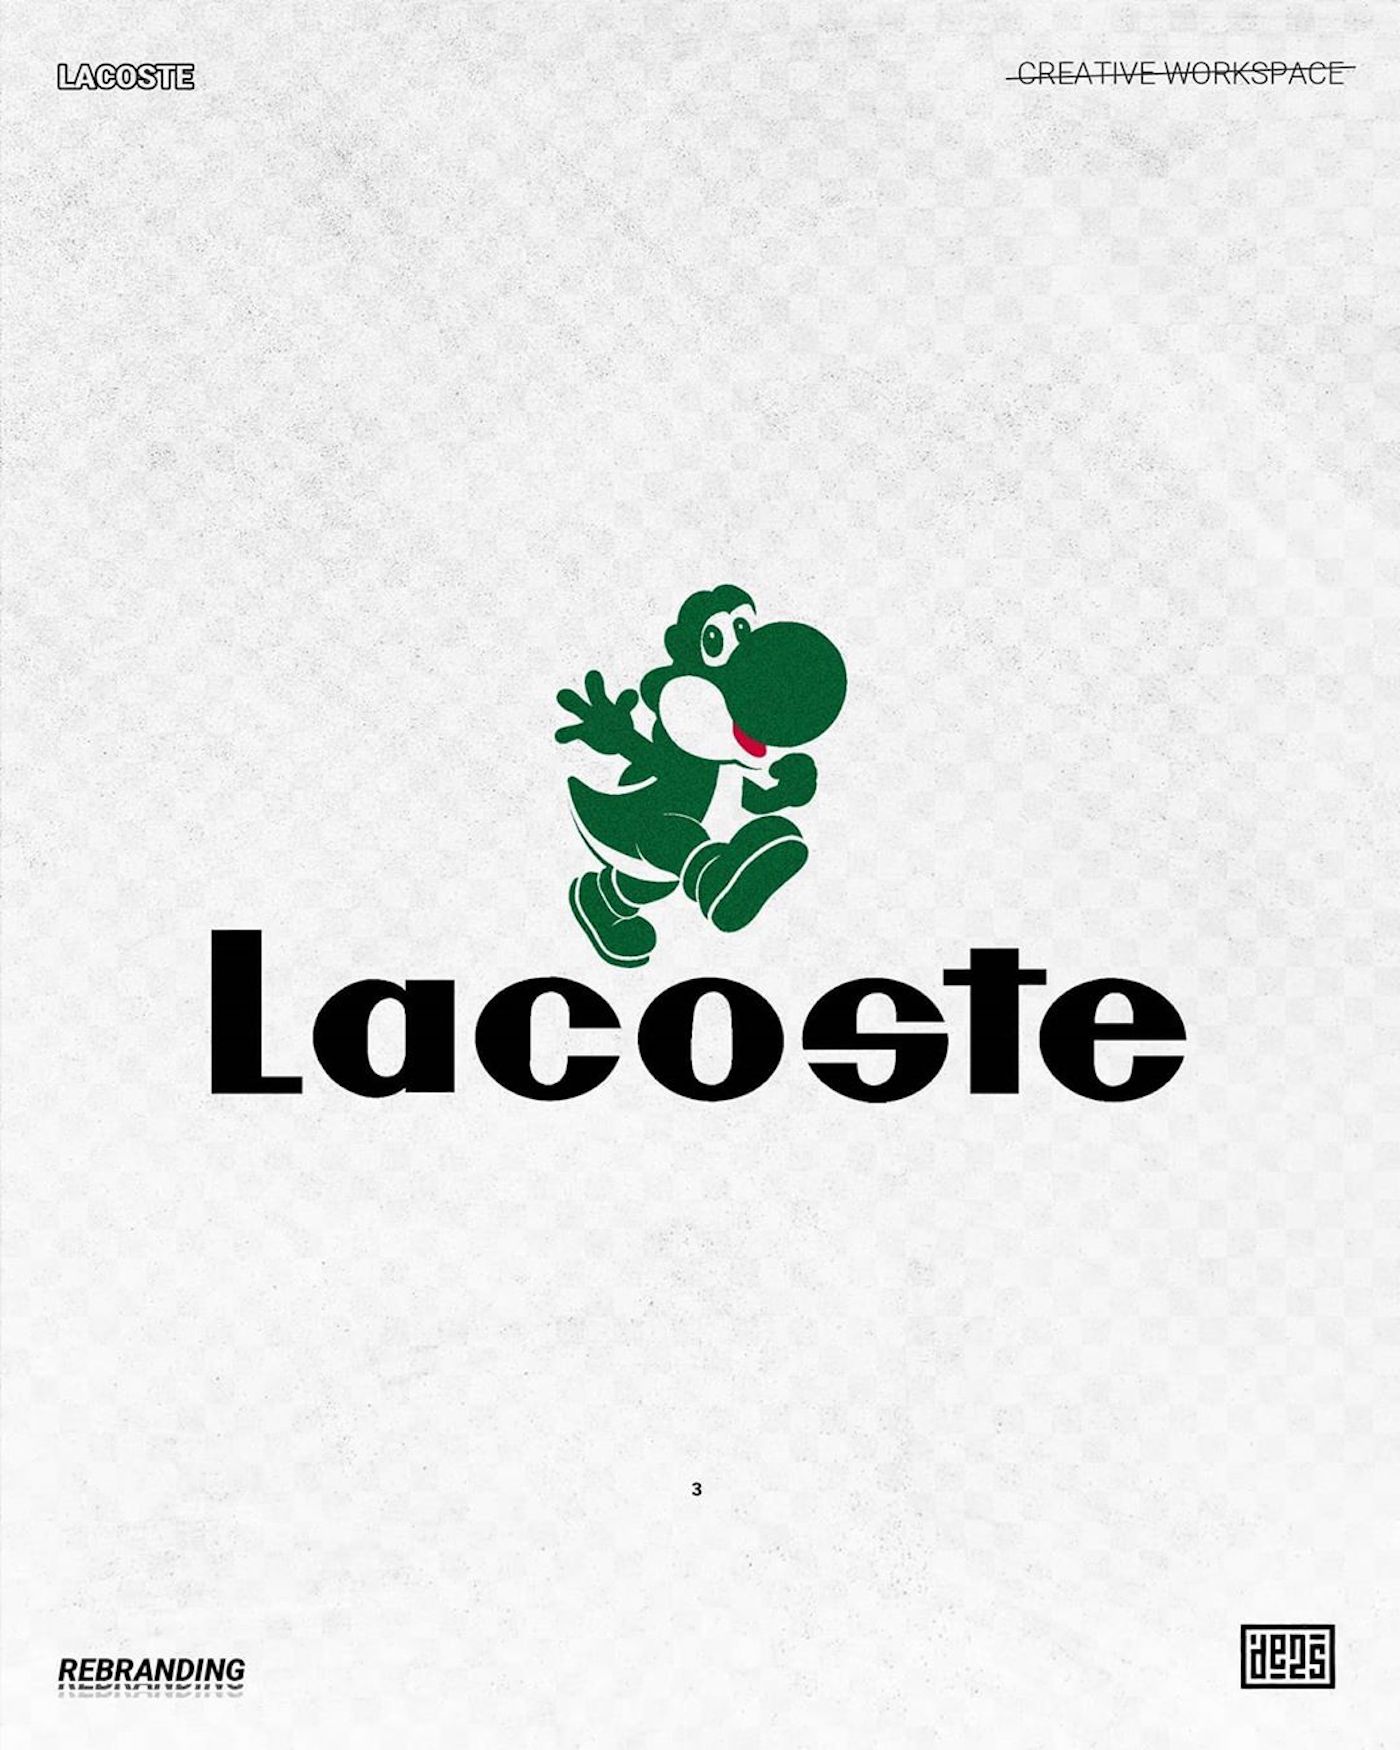 Logo de Lacoste rebrandé par de2s